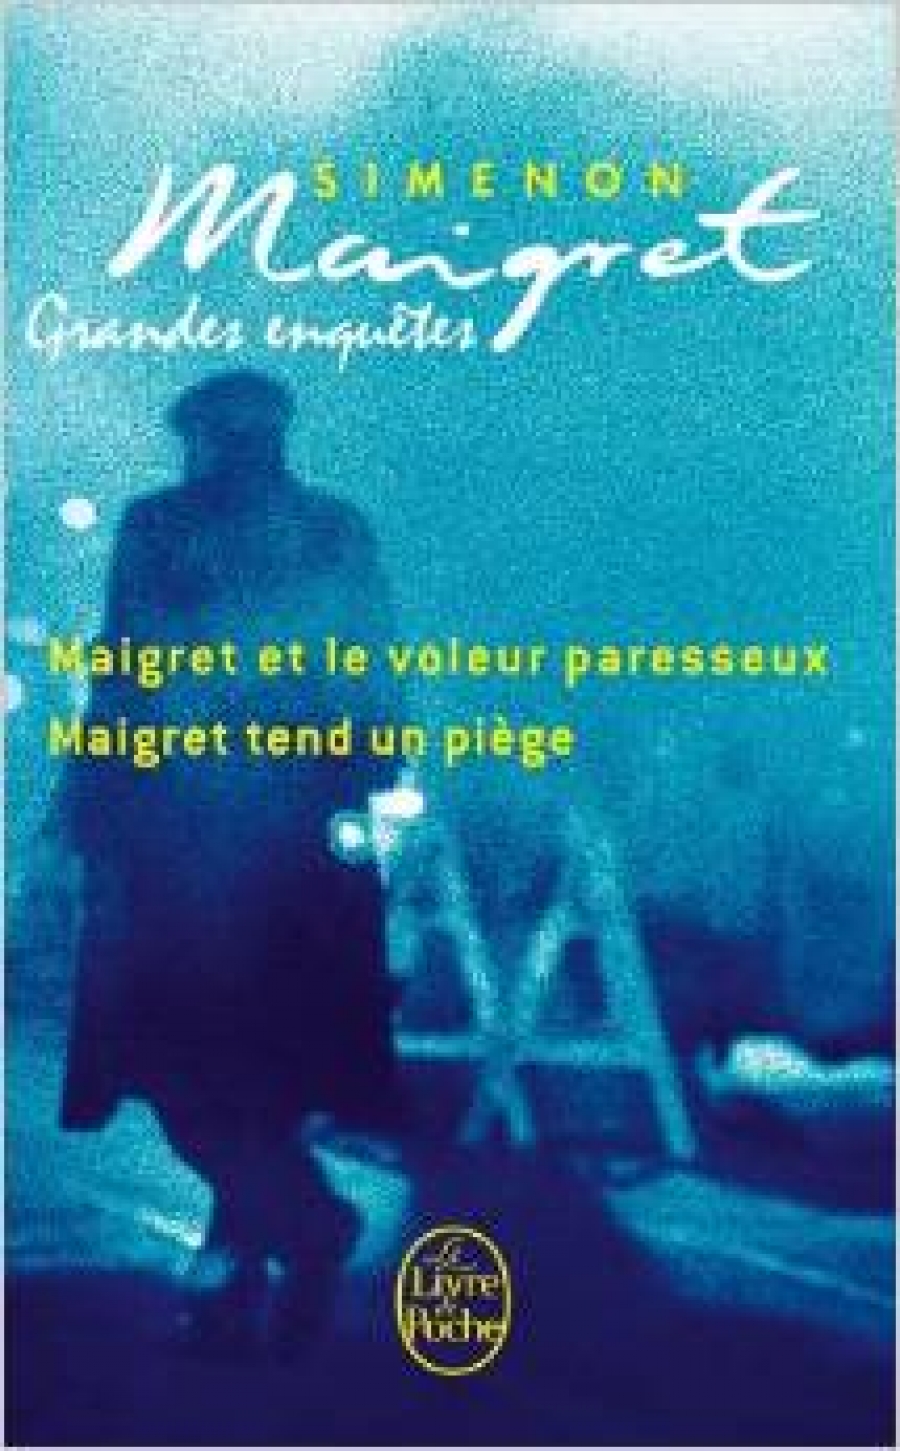 Simenon, Georges Grandes Enquetes de Maigret (Voleur Paresseux/Maigret tend un piege ) 